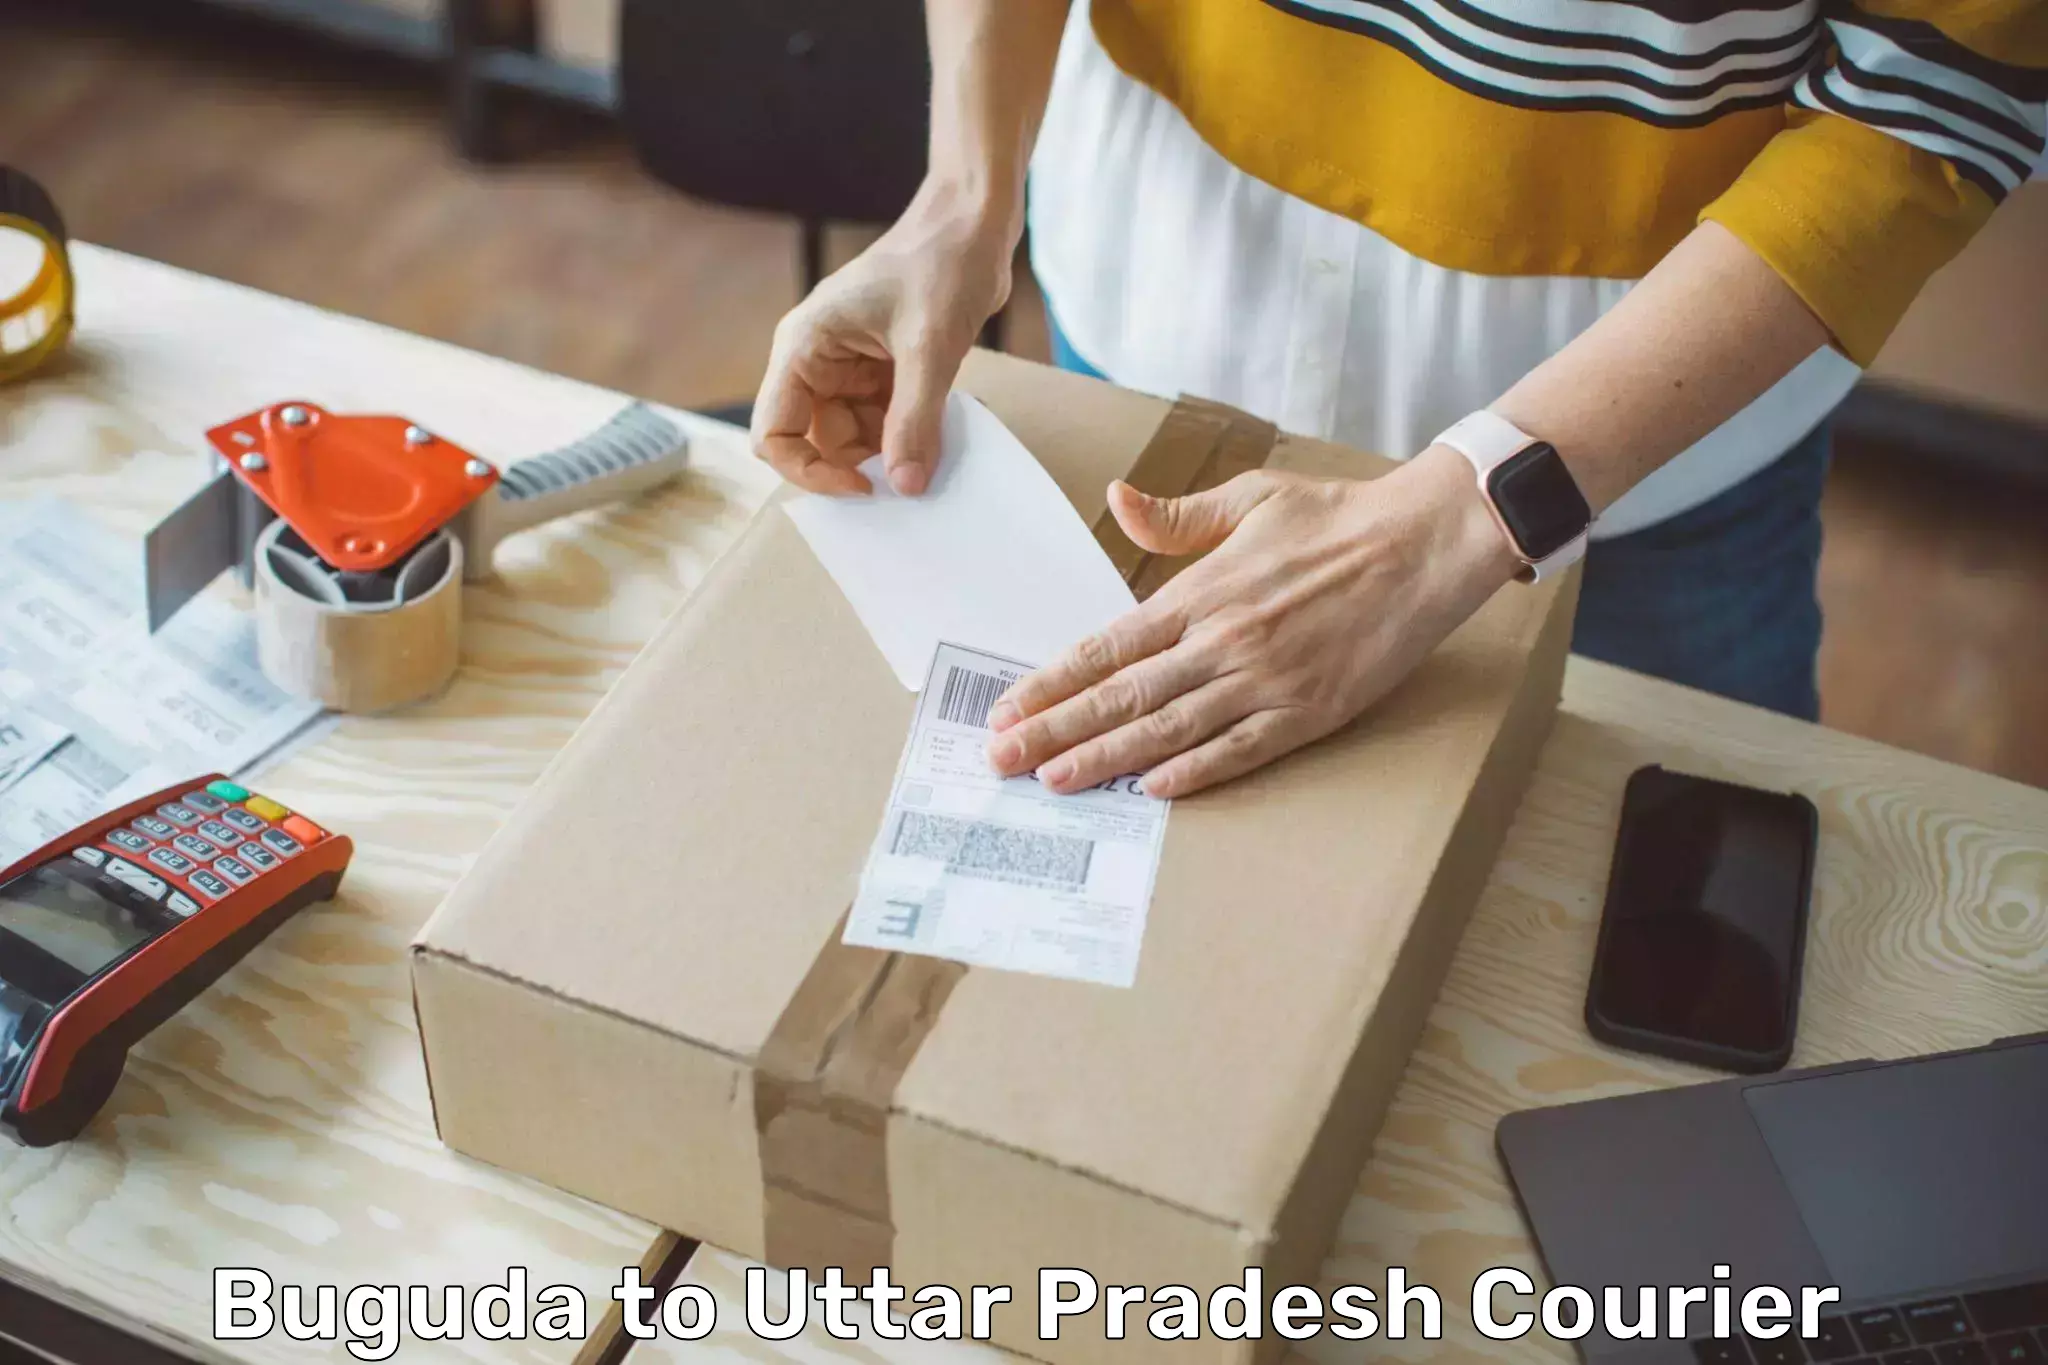 Easy access courier services Buguda to Uttar Pradesh